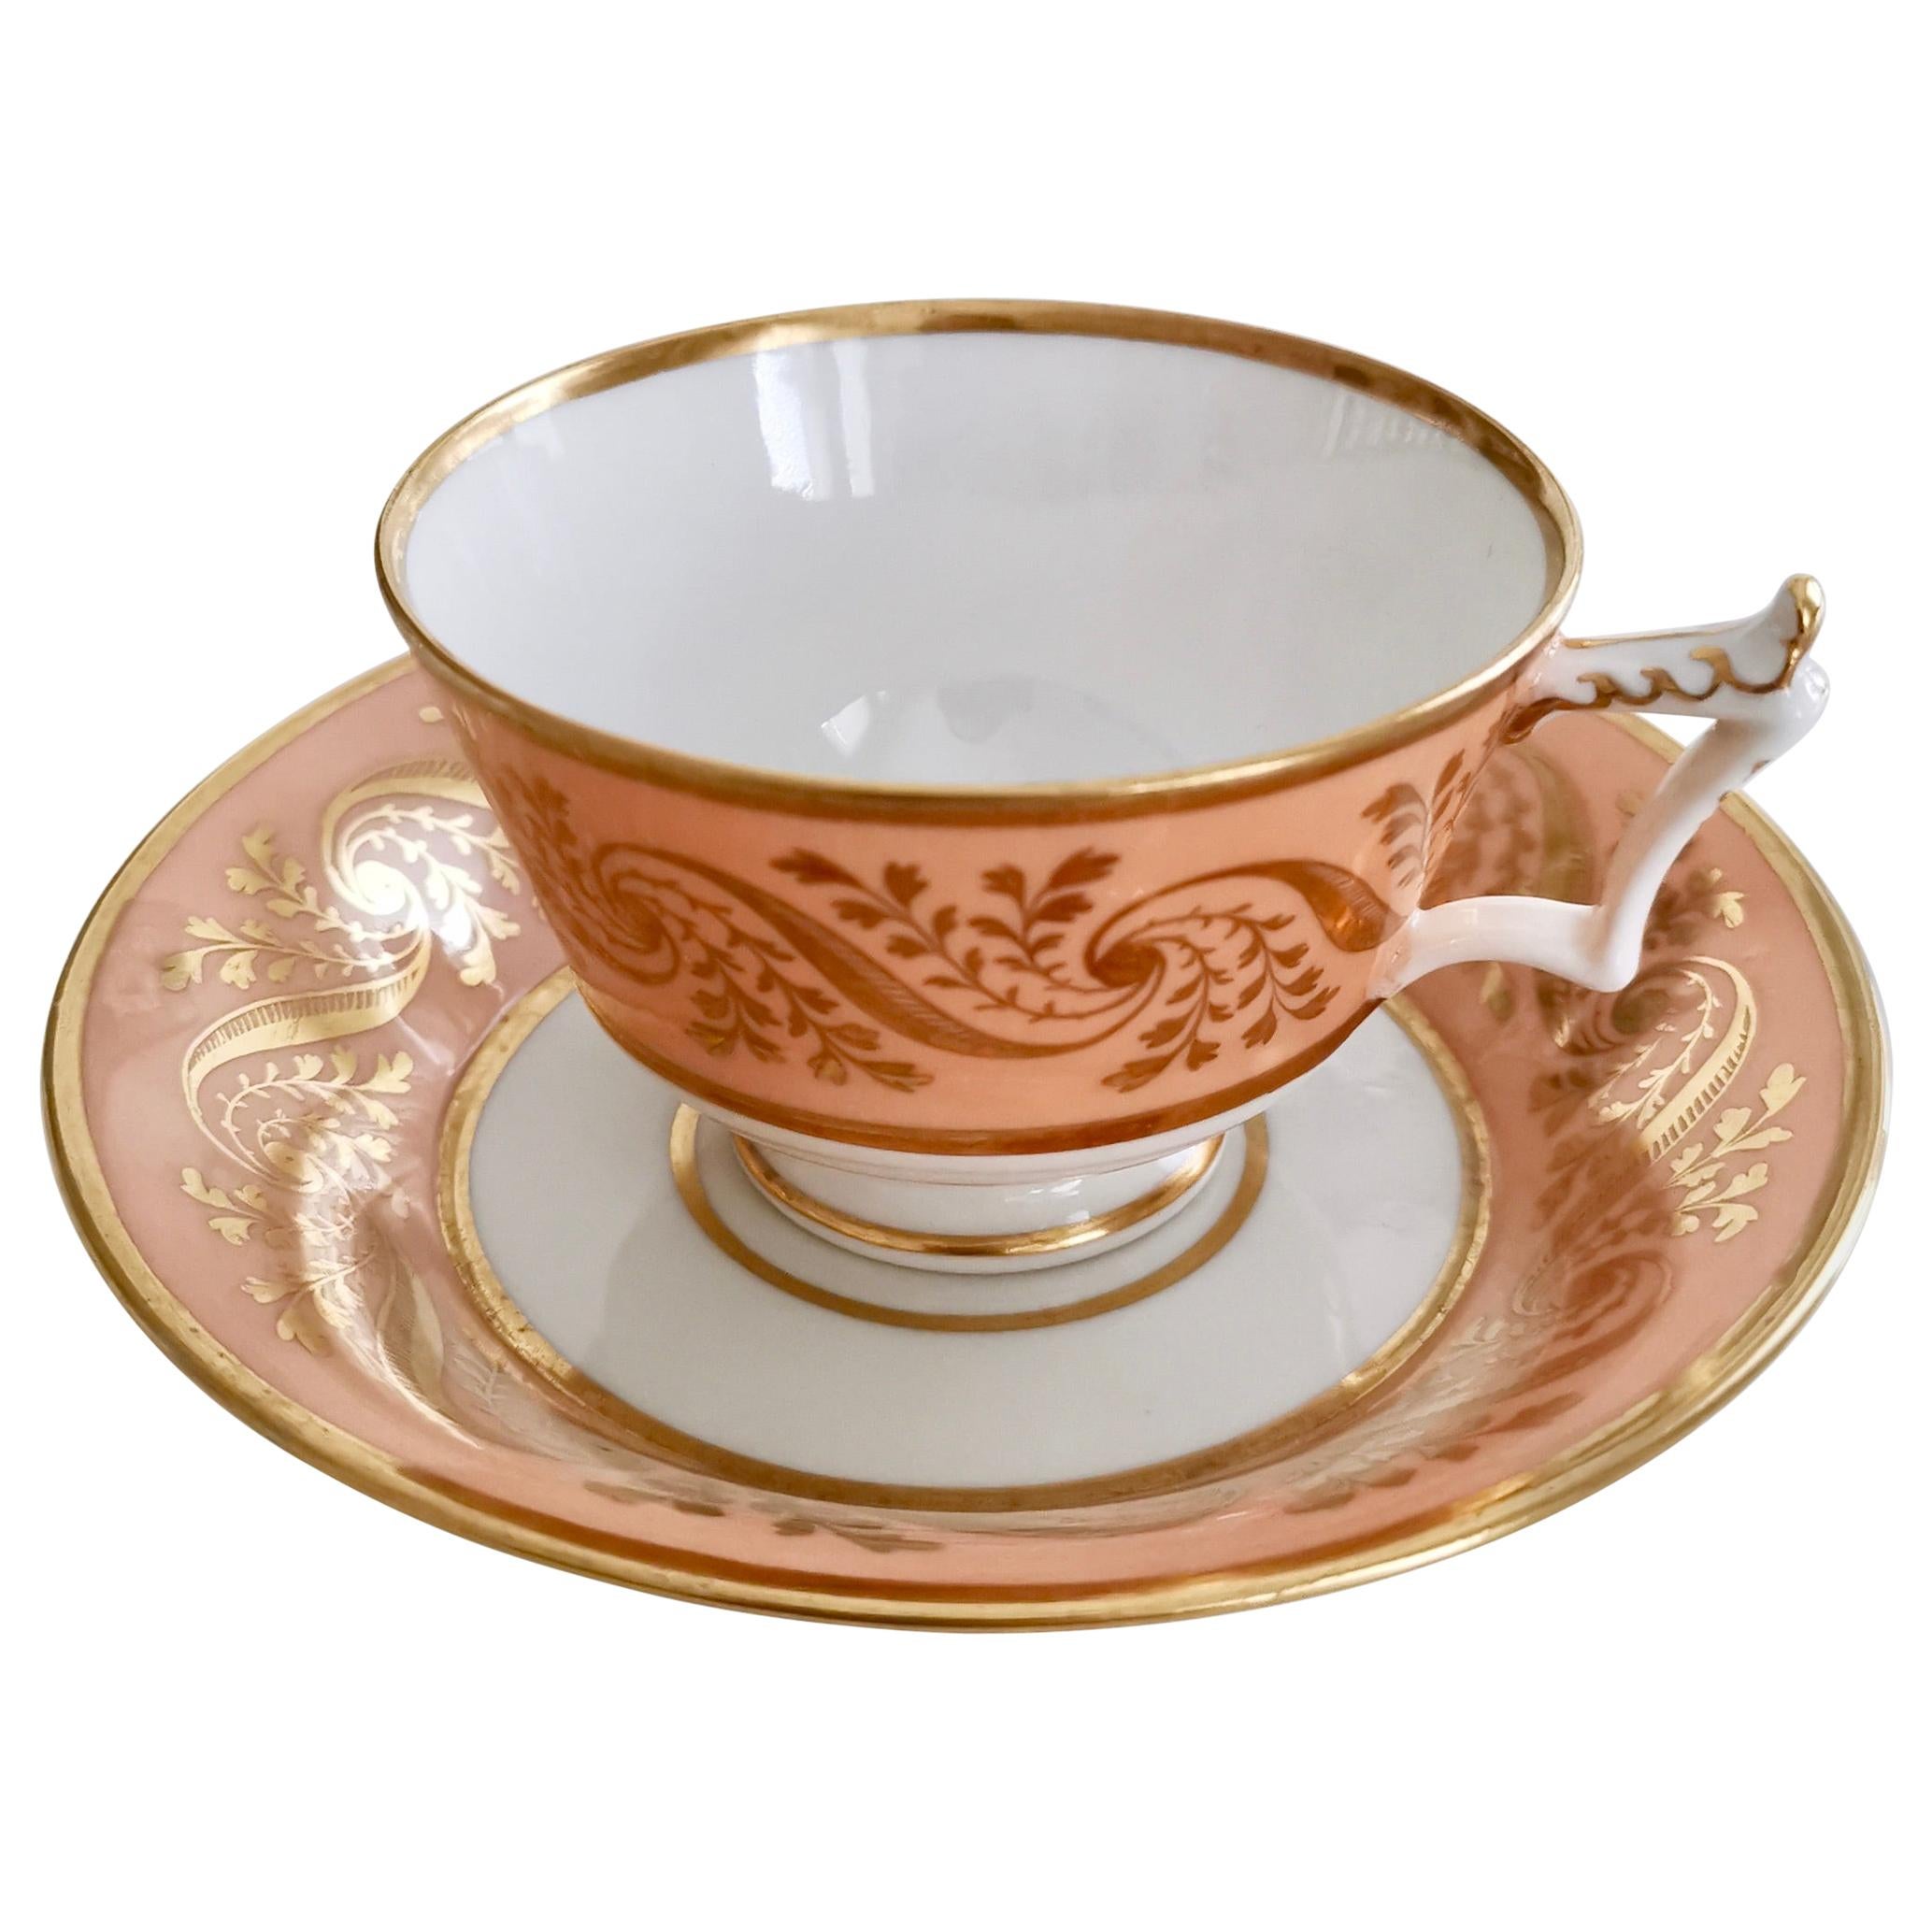 Flight and Barr Porcelain Teacup, Peach with Gilt, Georgian 1795-1804